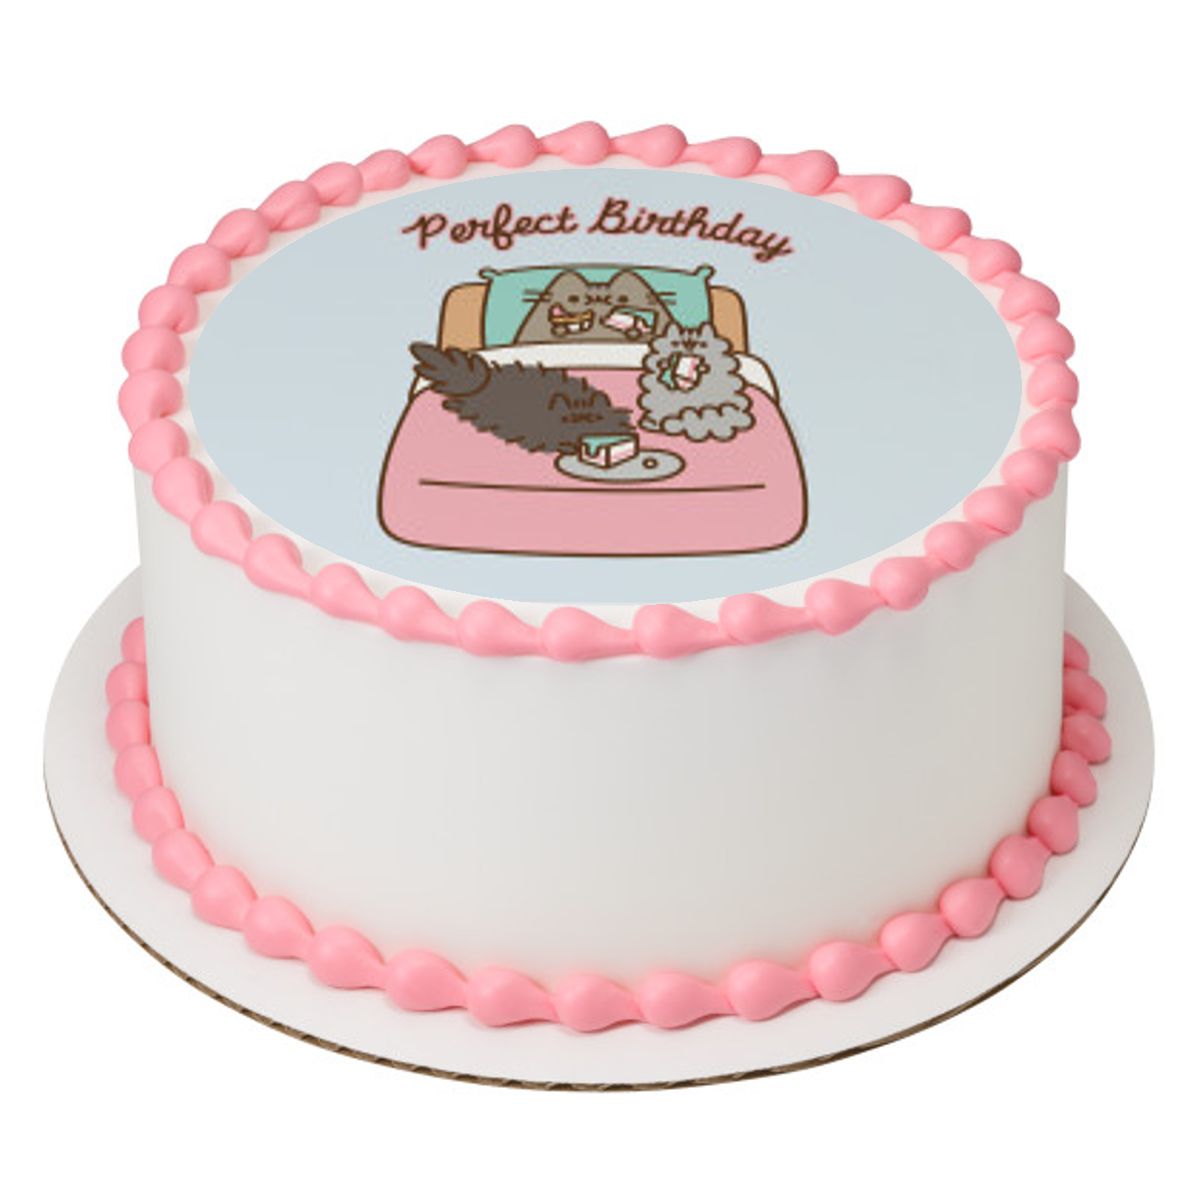 Afwezigheid evenwichtig Wacht even Pusheen | Pusheen Cake | Pusheen Cupcakes | Pusheen Cookies | Pusheen Oreos  | Cat Cake | Cat Cupcakes | Pusheen Party | Pusheen Edible Topper | Kawaii  Cookie | Kawaii Cake | Kawaii Cake Pops